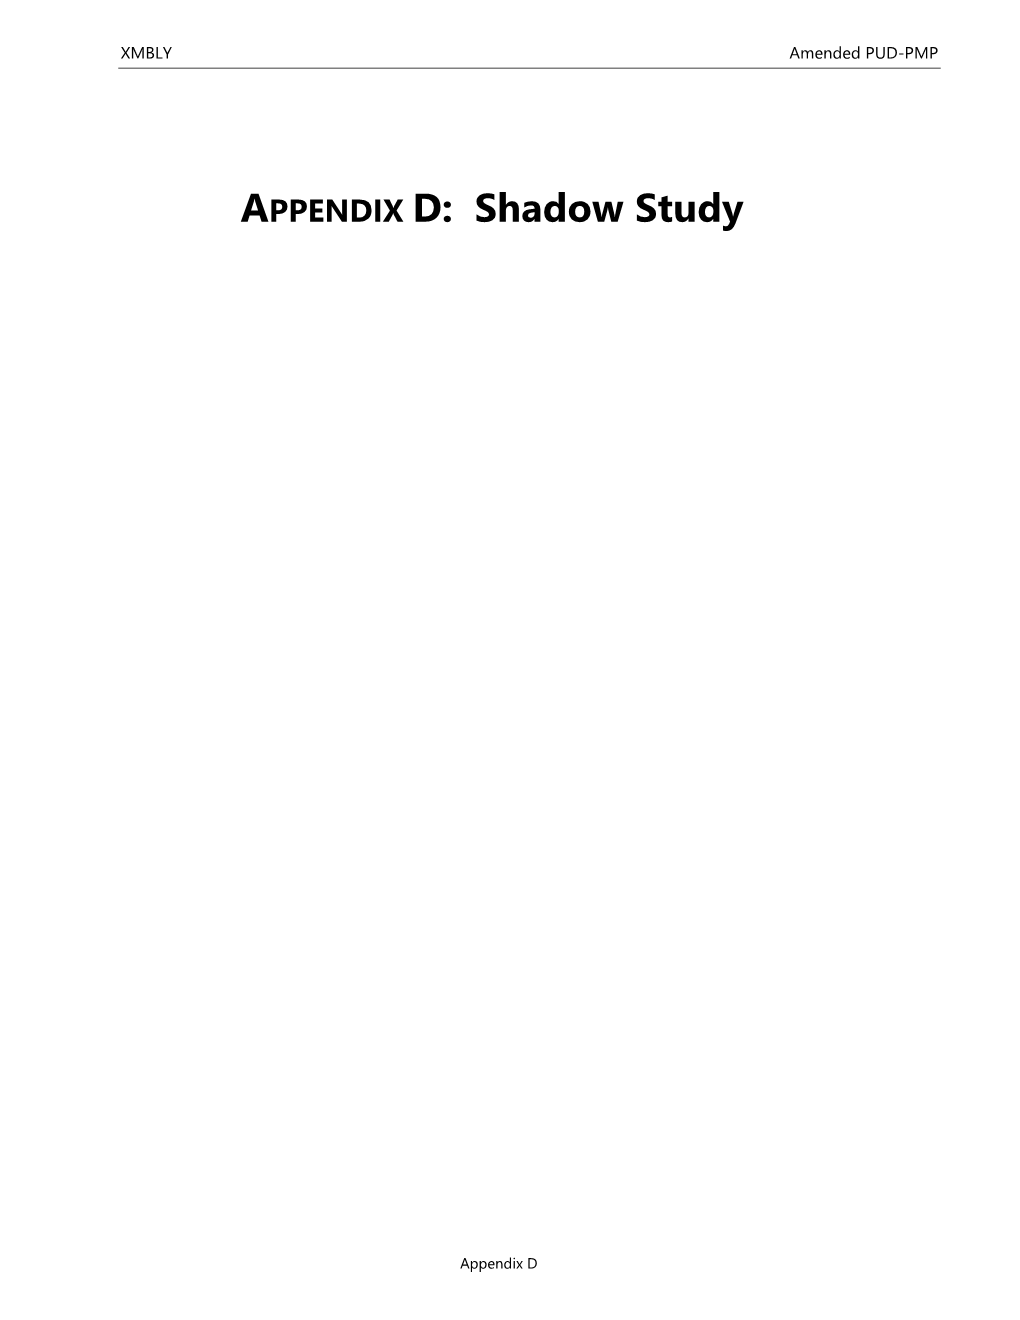 APPENDIX D: Shadow Study